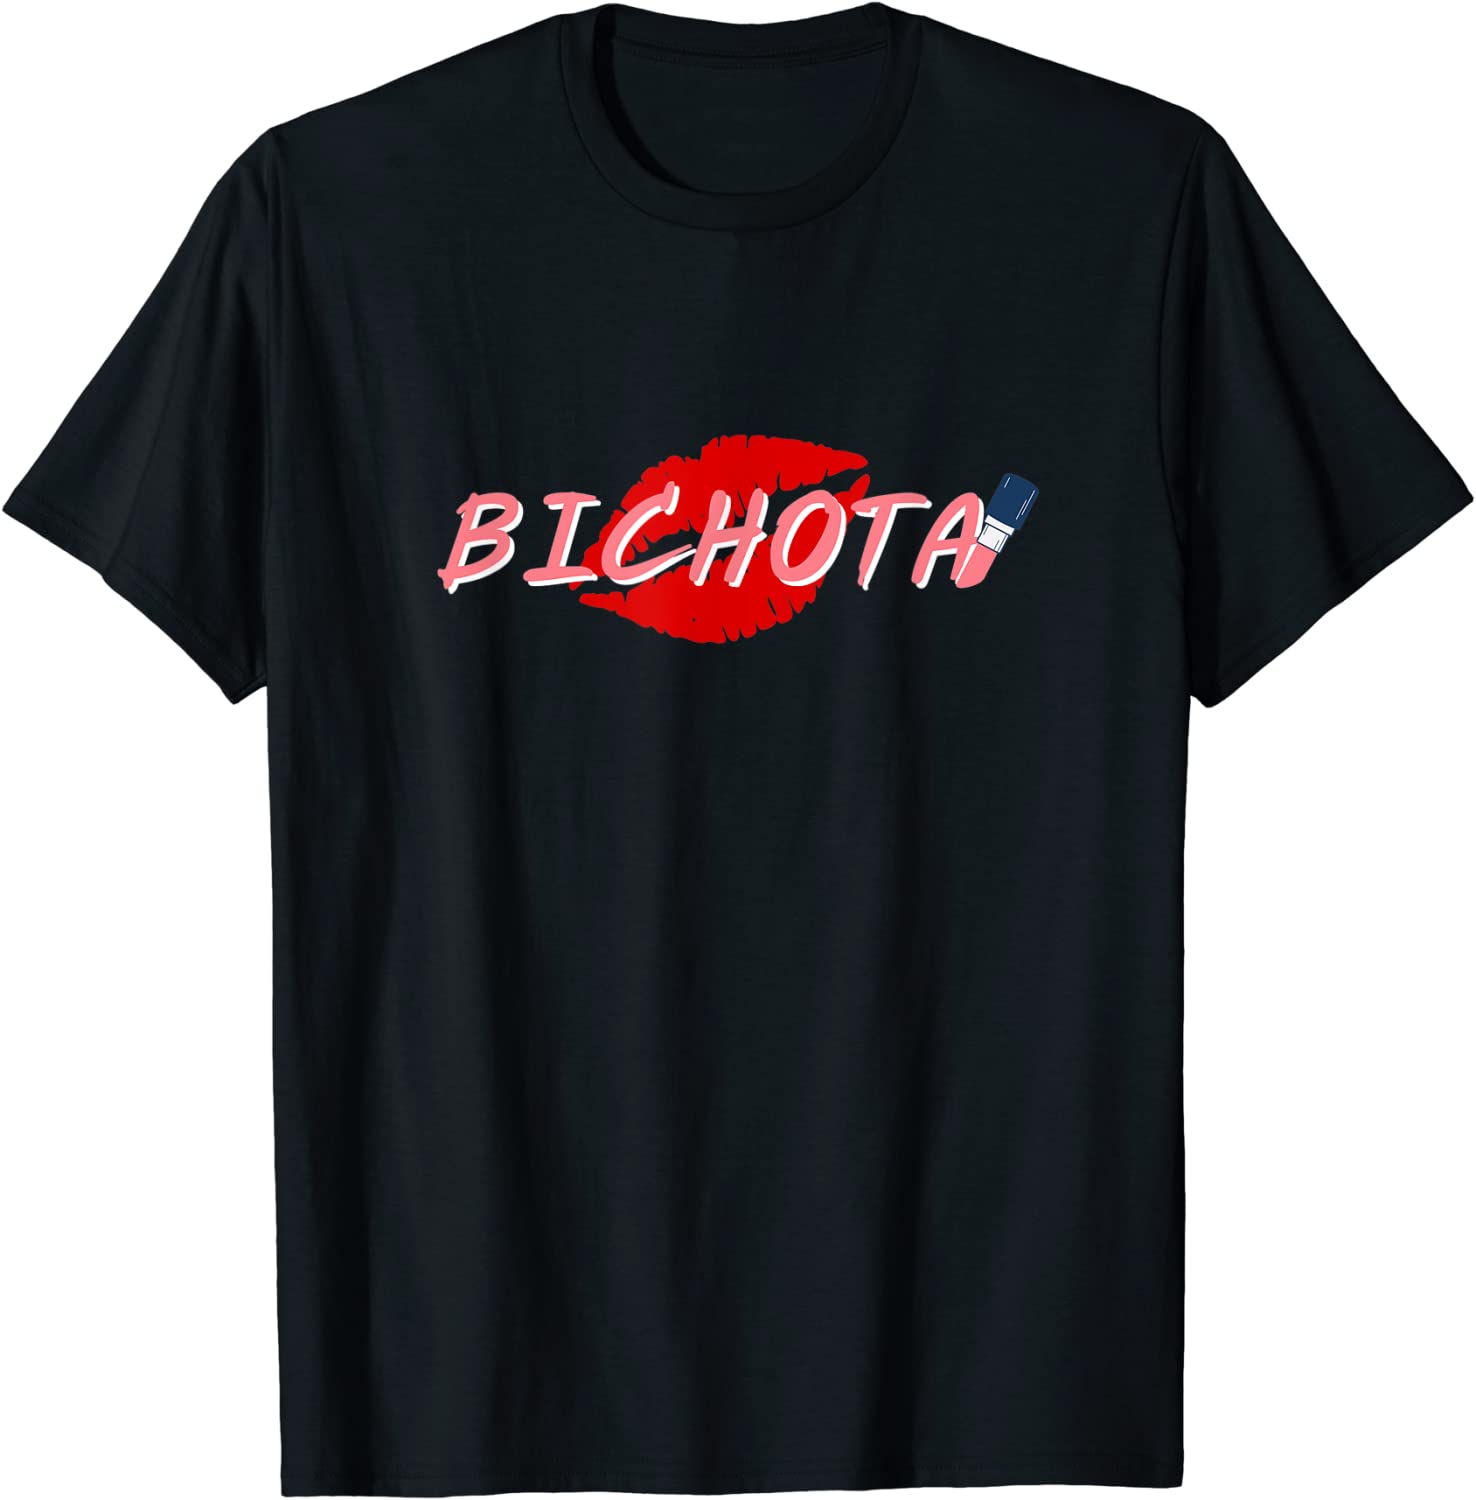 Bichota Light Graphic Tee T-Shirt IYT